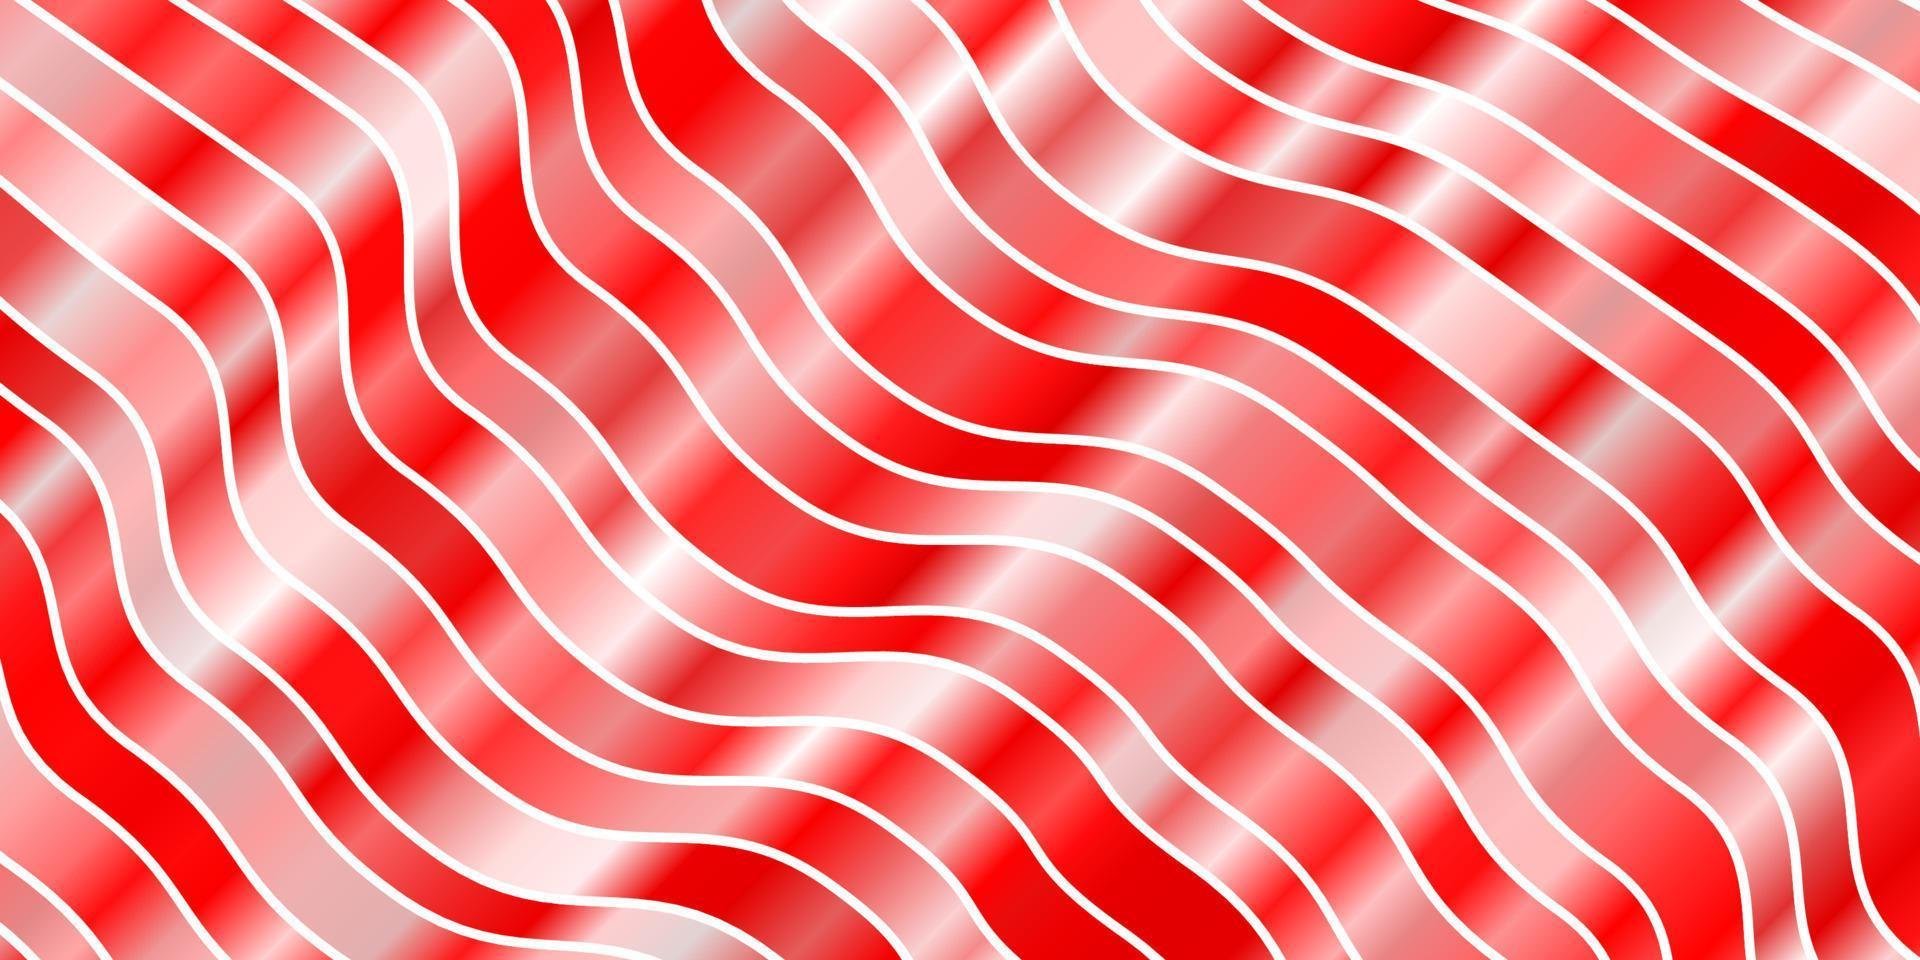 fundo vector vermelho claro com linhas dobradas.